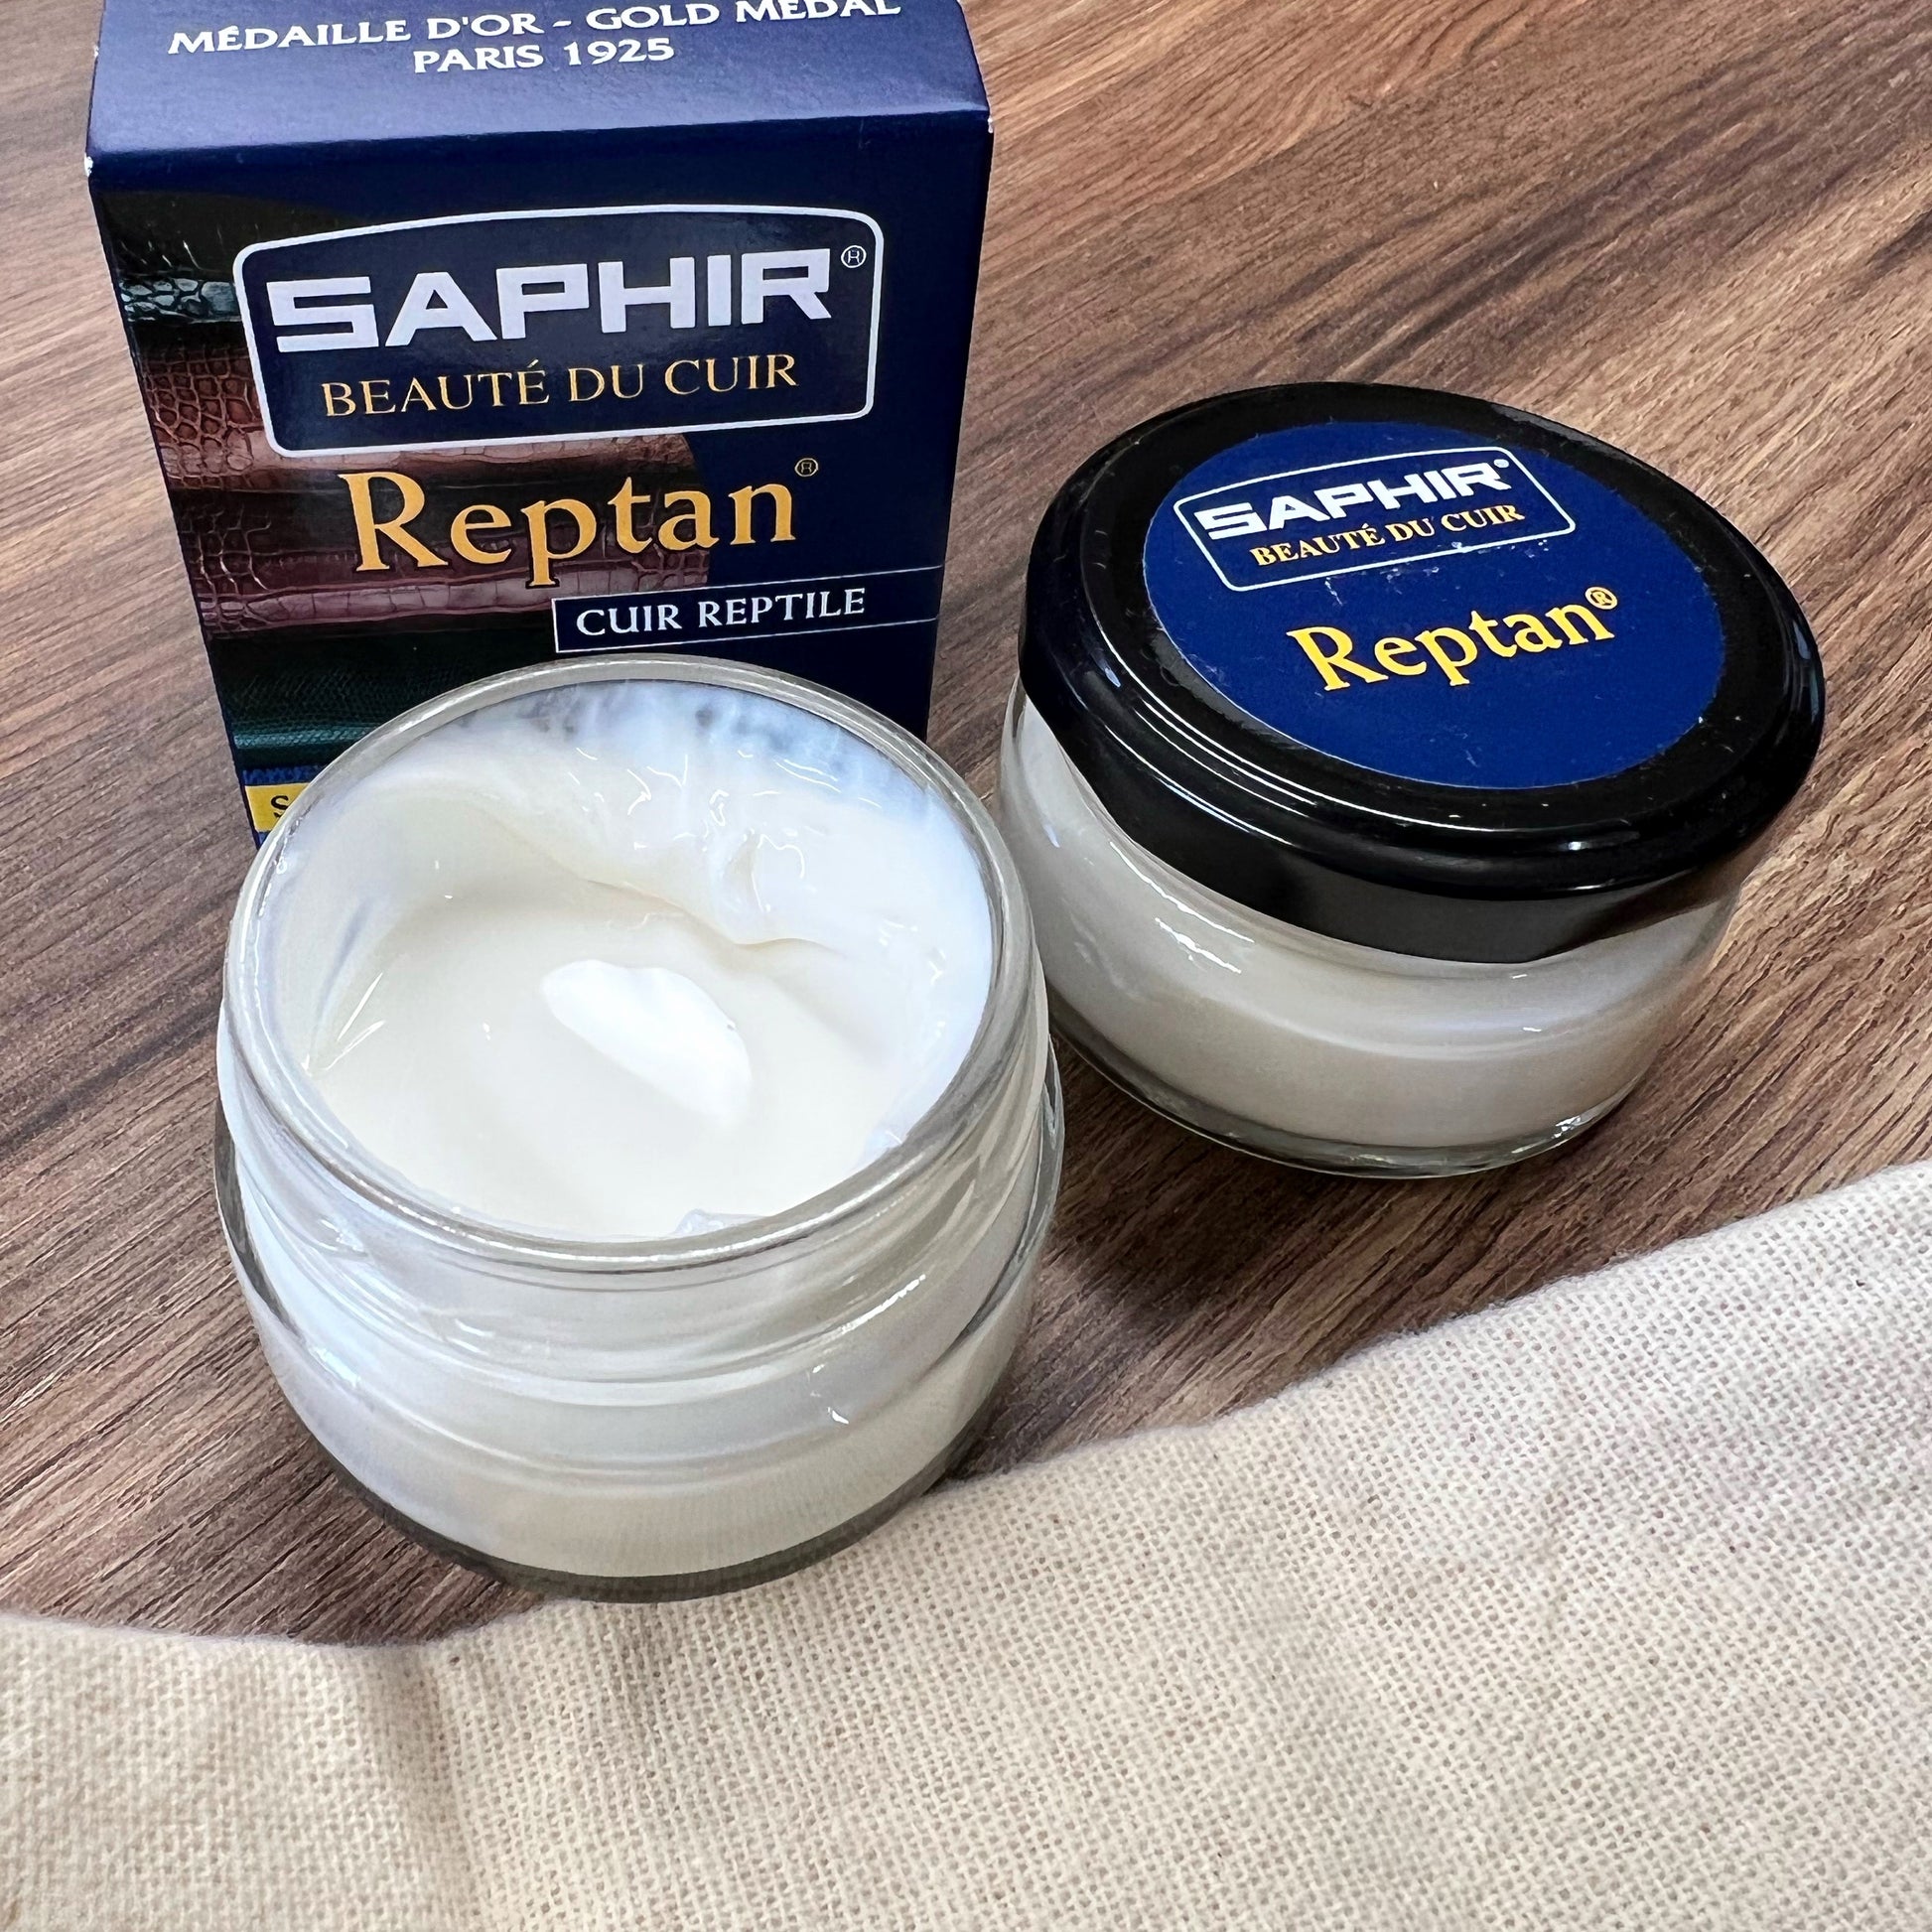 Saphir Reptan reptile leather conditioner cream